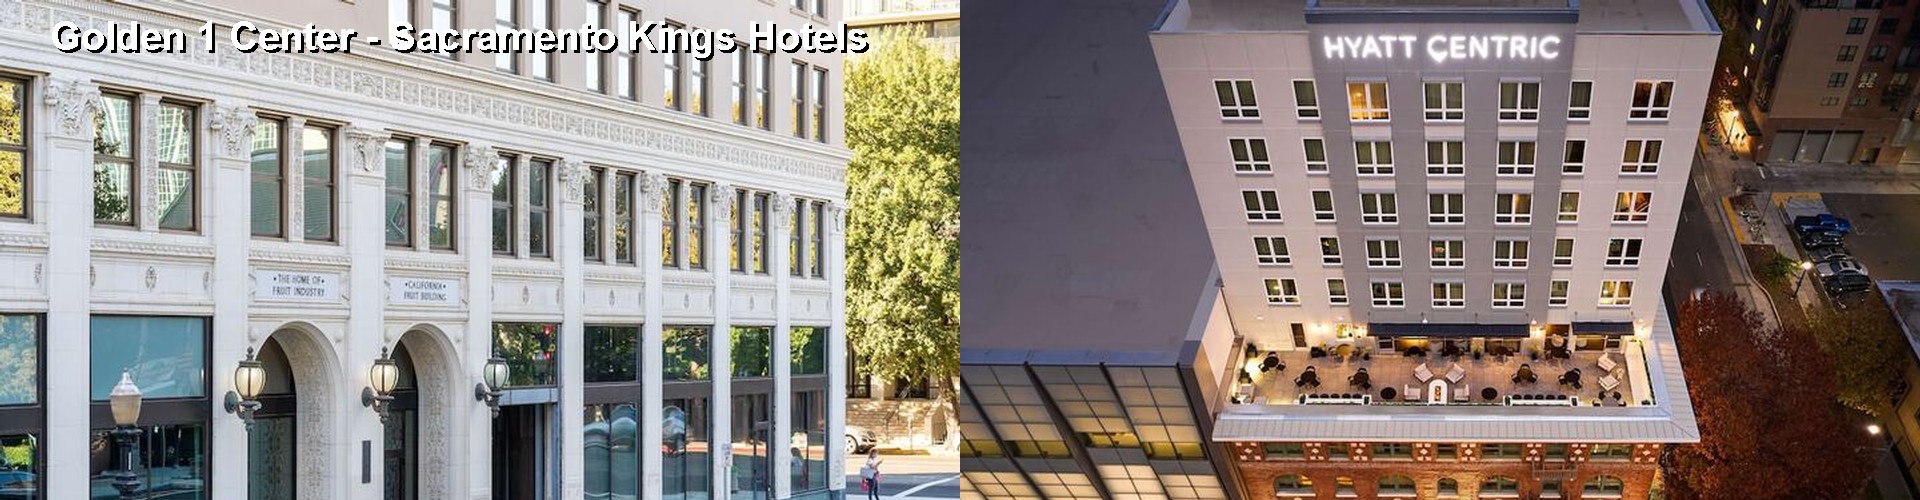 5 Best Hotels near Golden 1 Center - Sacramento Kings